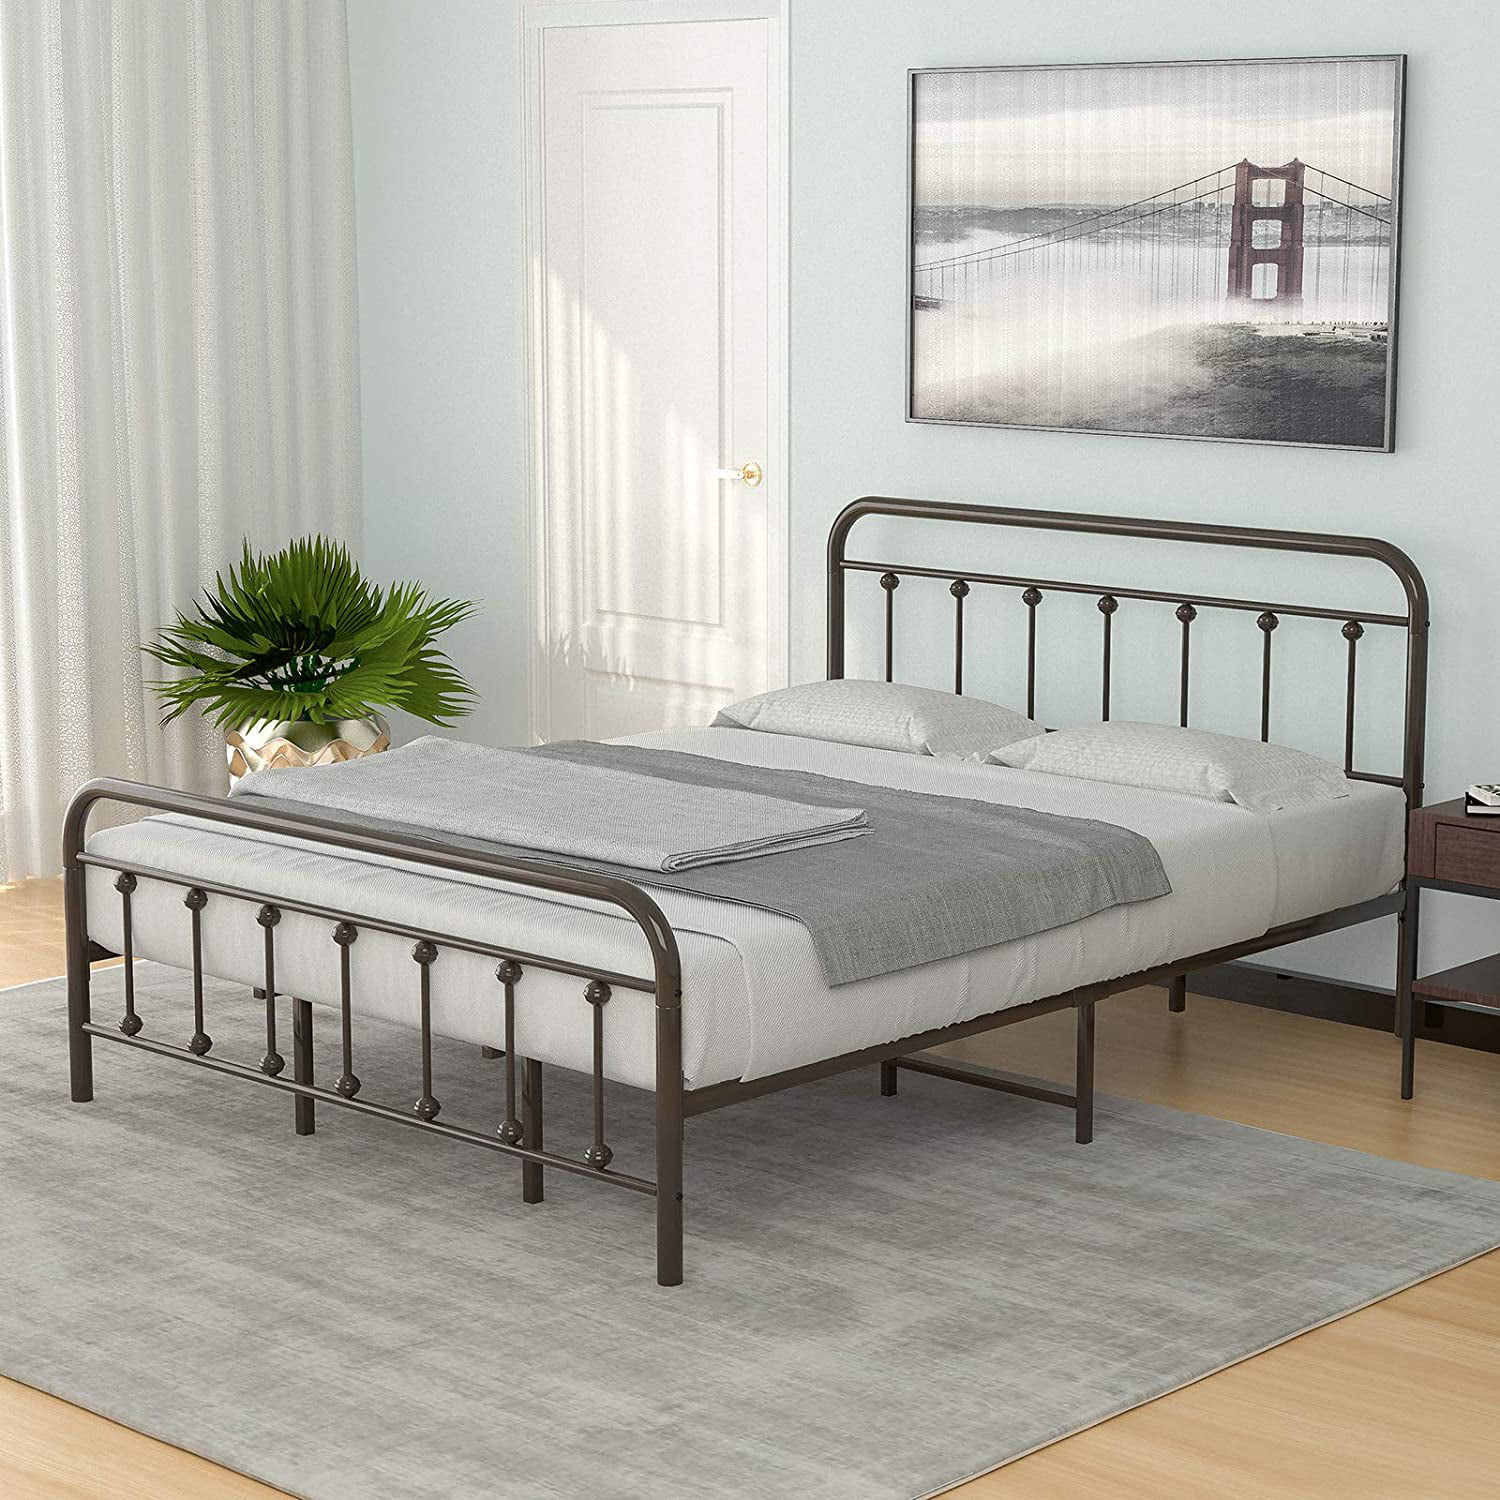 Mecor King Size Metal Platform Bed, Headboard Bed Frame King